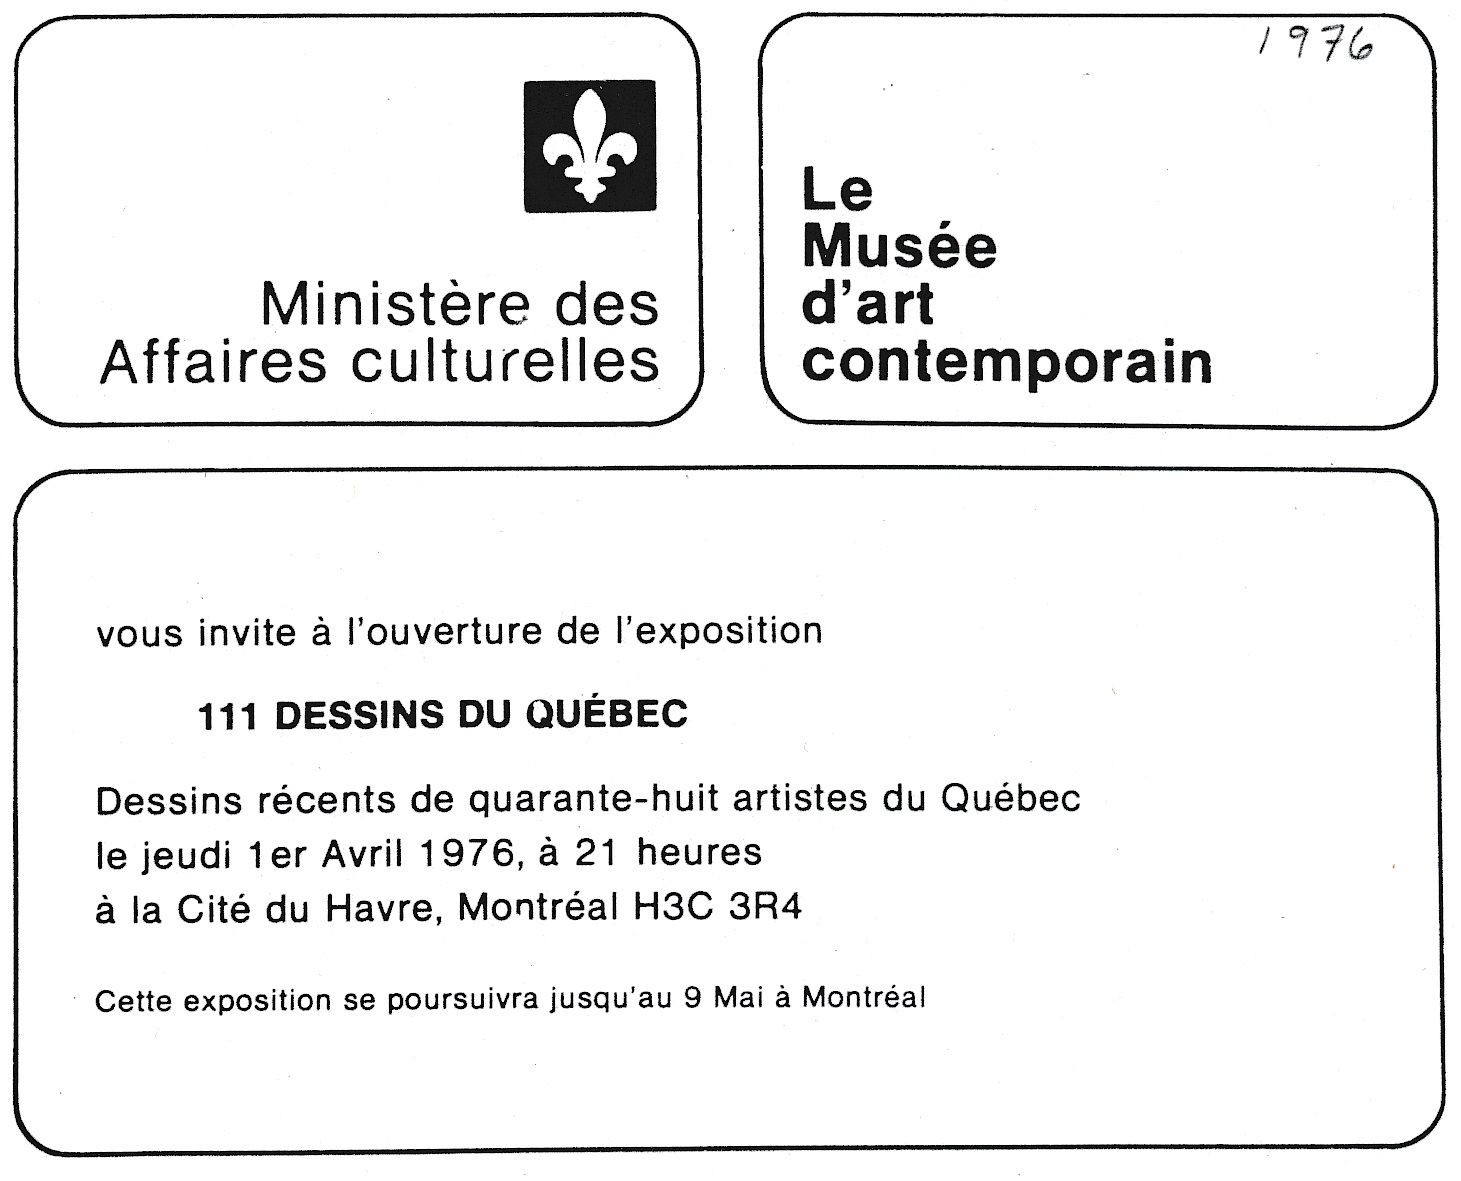 Carton d’invitation de l’exposition Cent-onze dessins du Québec, Musée d'art contemporain de Montréal, 1976.